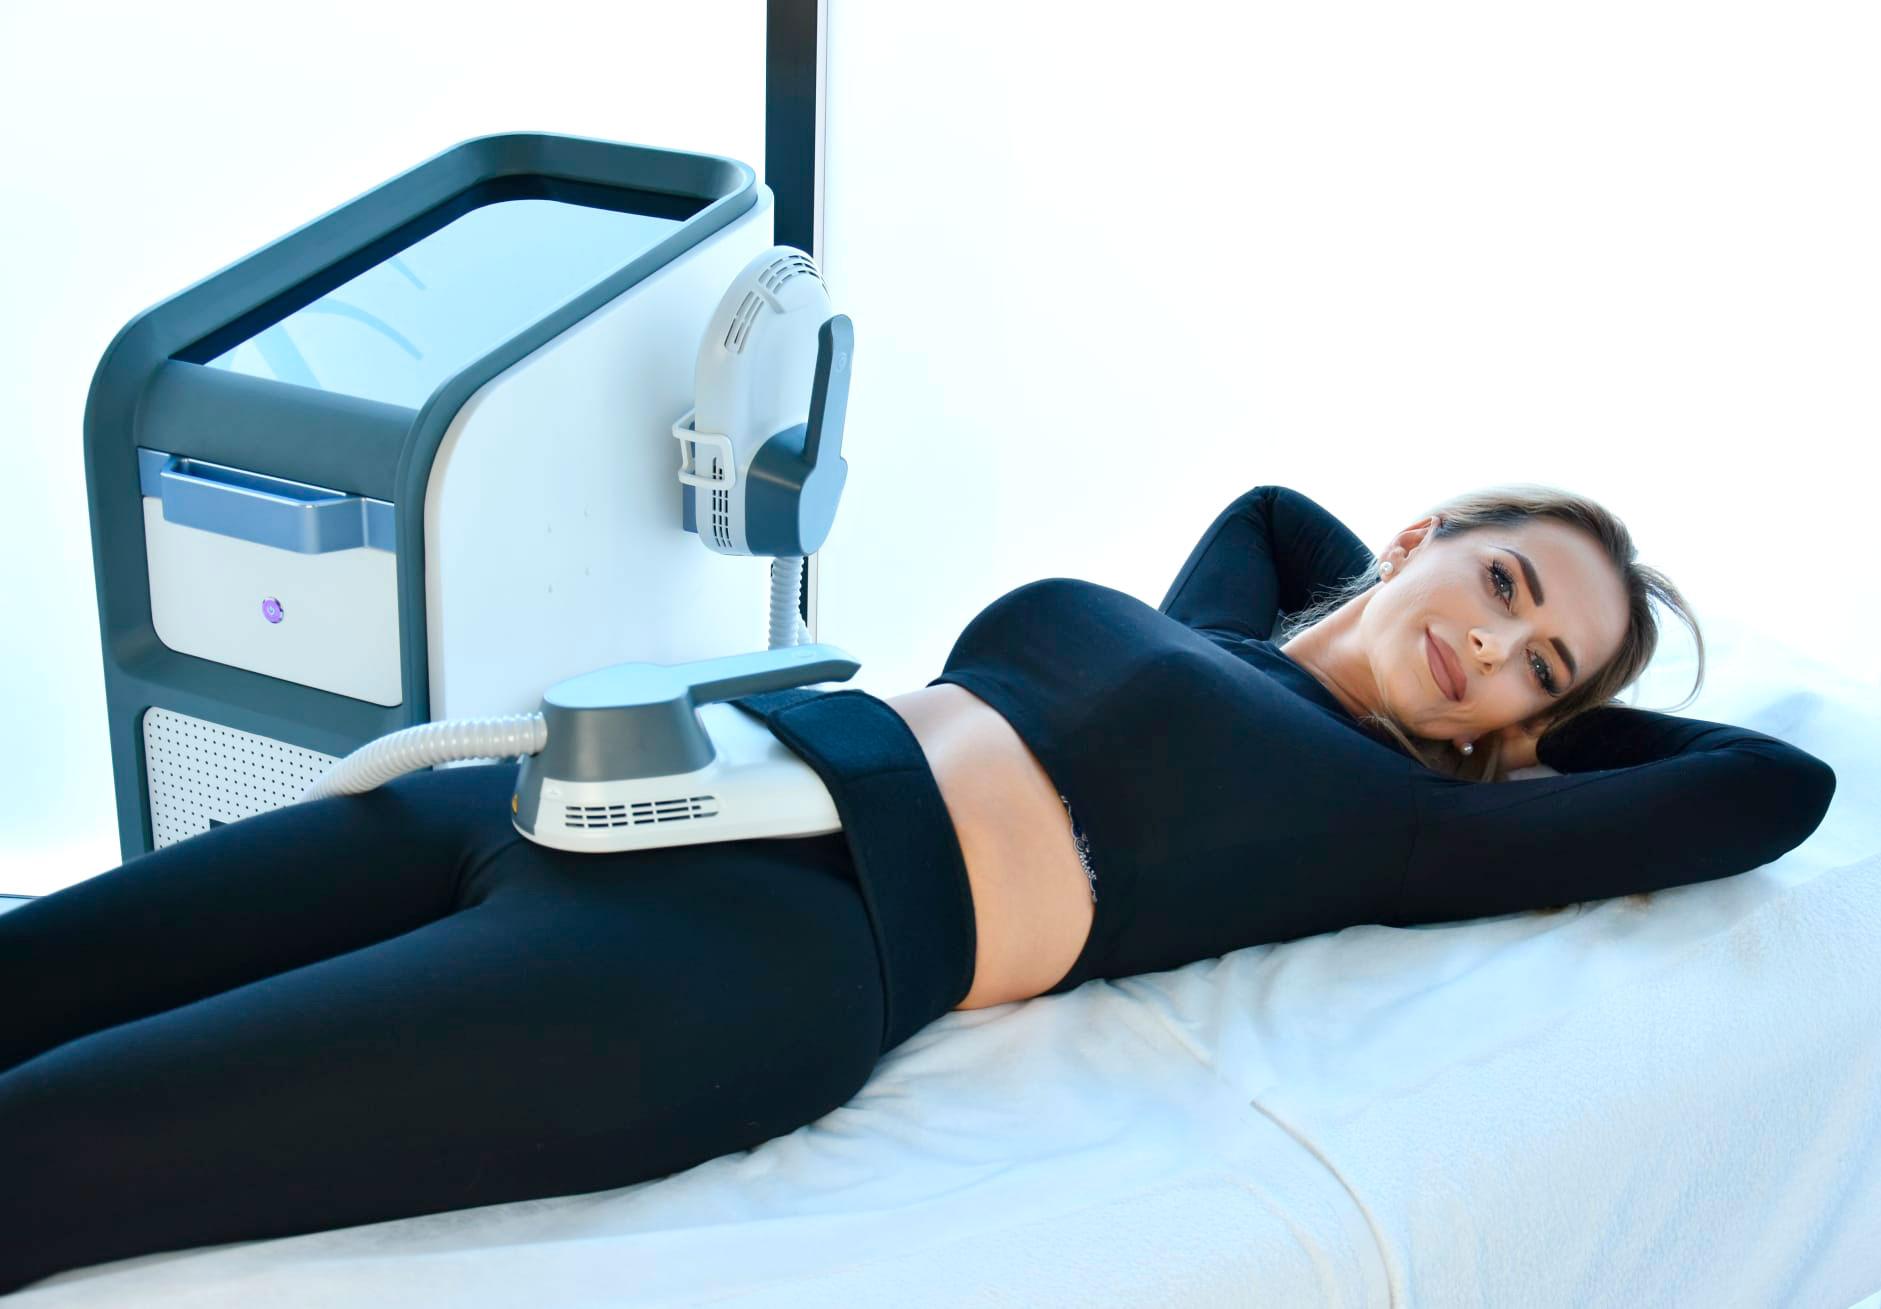 BodySculpt Body Space - Rewolucyjne urządzenie kosmetyczne do modelowania sylwetki - buduje mięśni i usuwa tkankę tłuszczową podczas jednego zabiegu